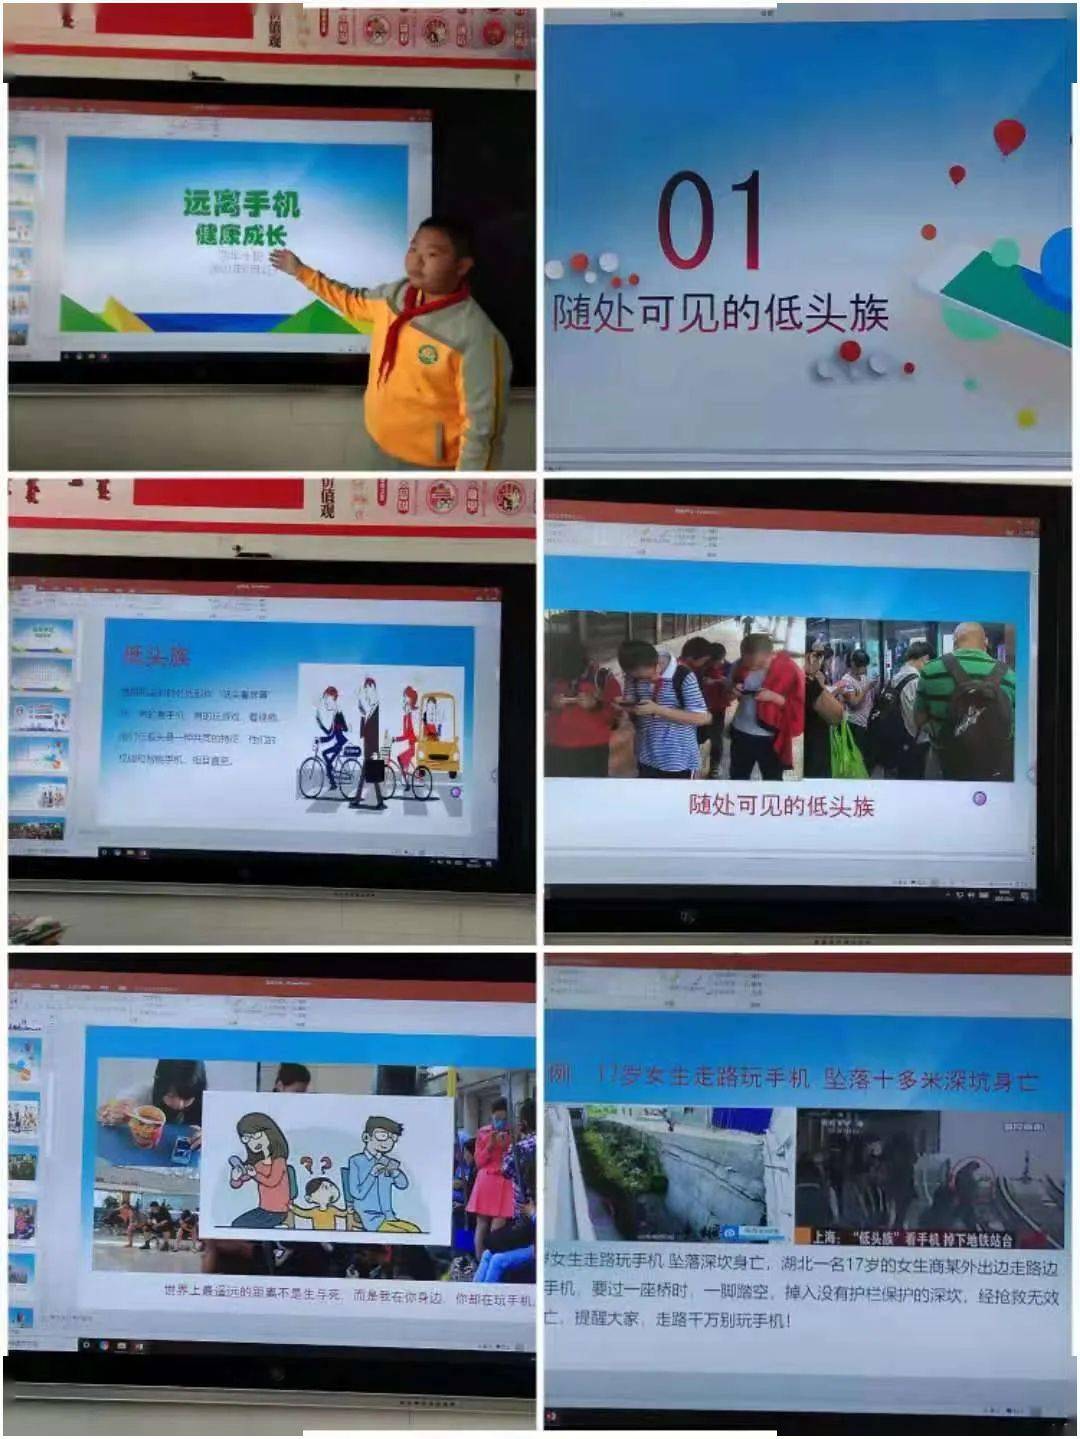 远离手机 健康成长 ——锡林浩特市第五小学严格落实"